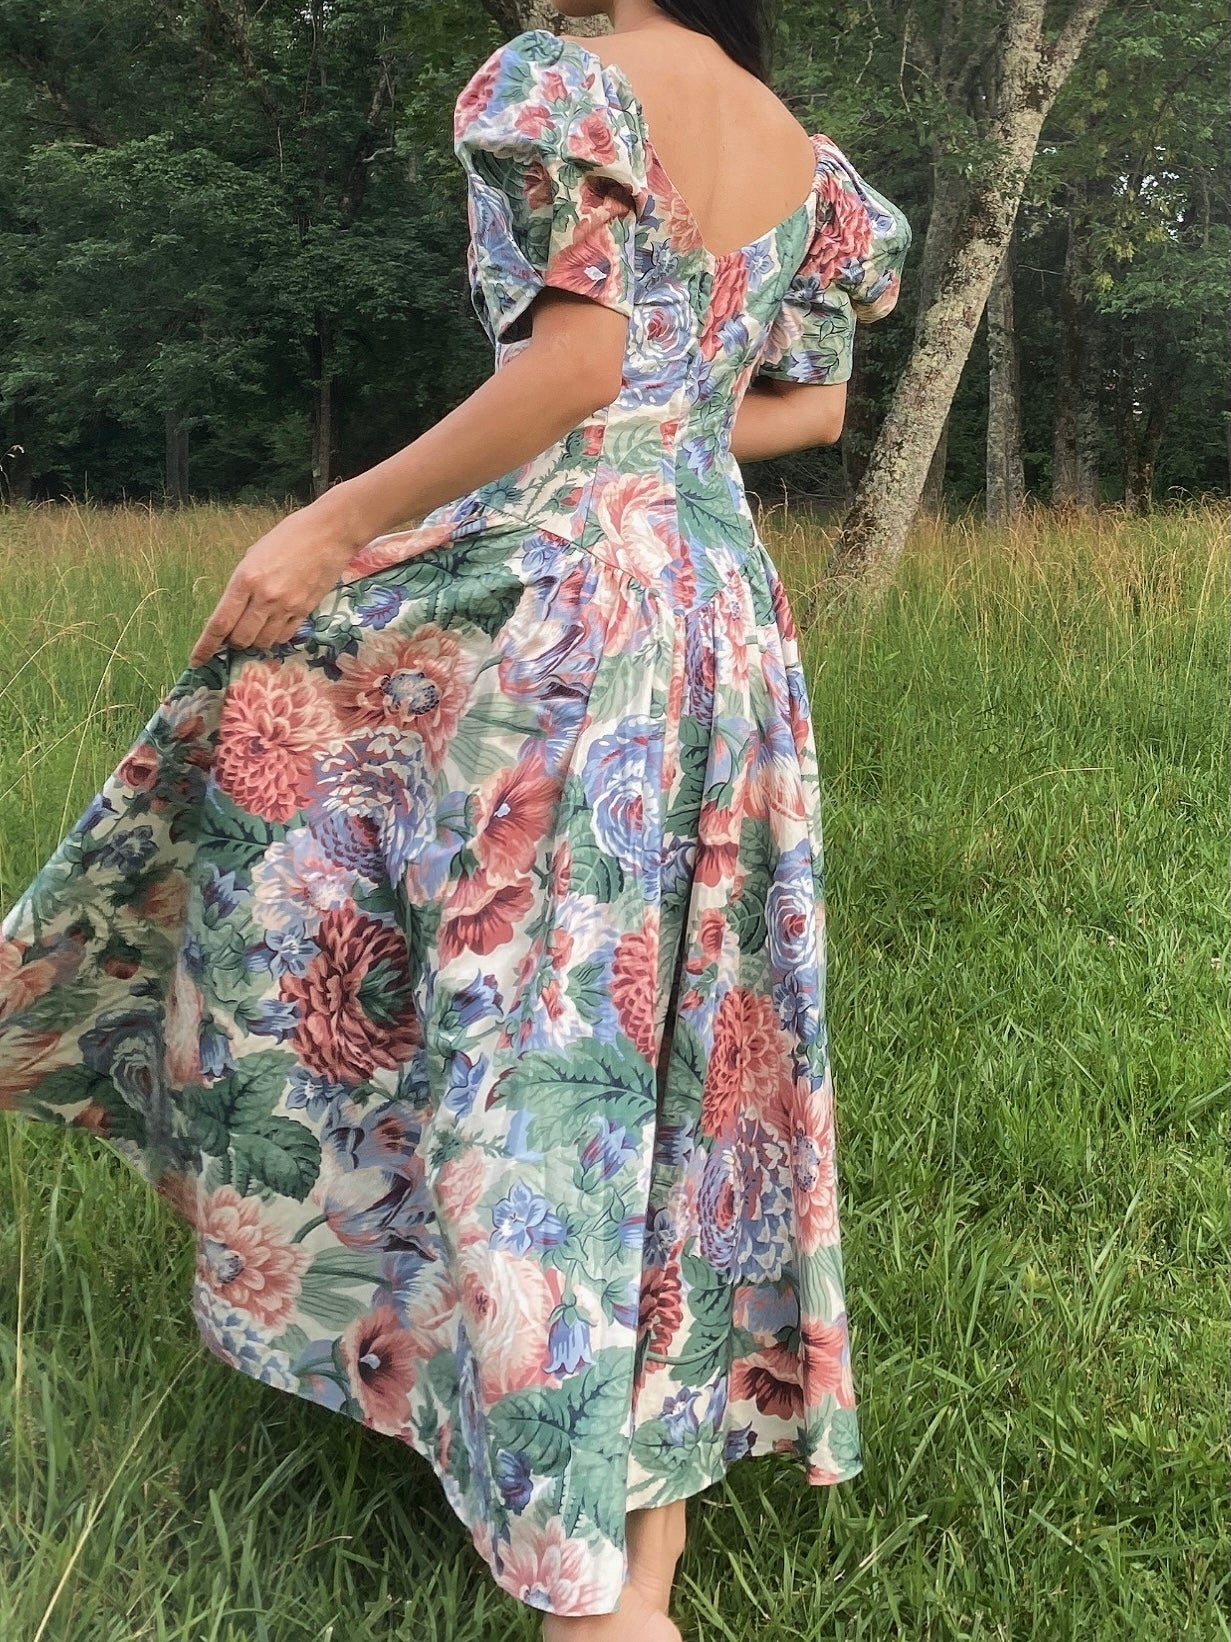 1980s Floral Cotton Dress - S/M